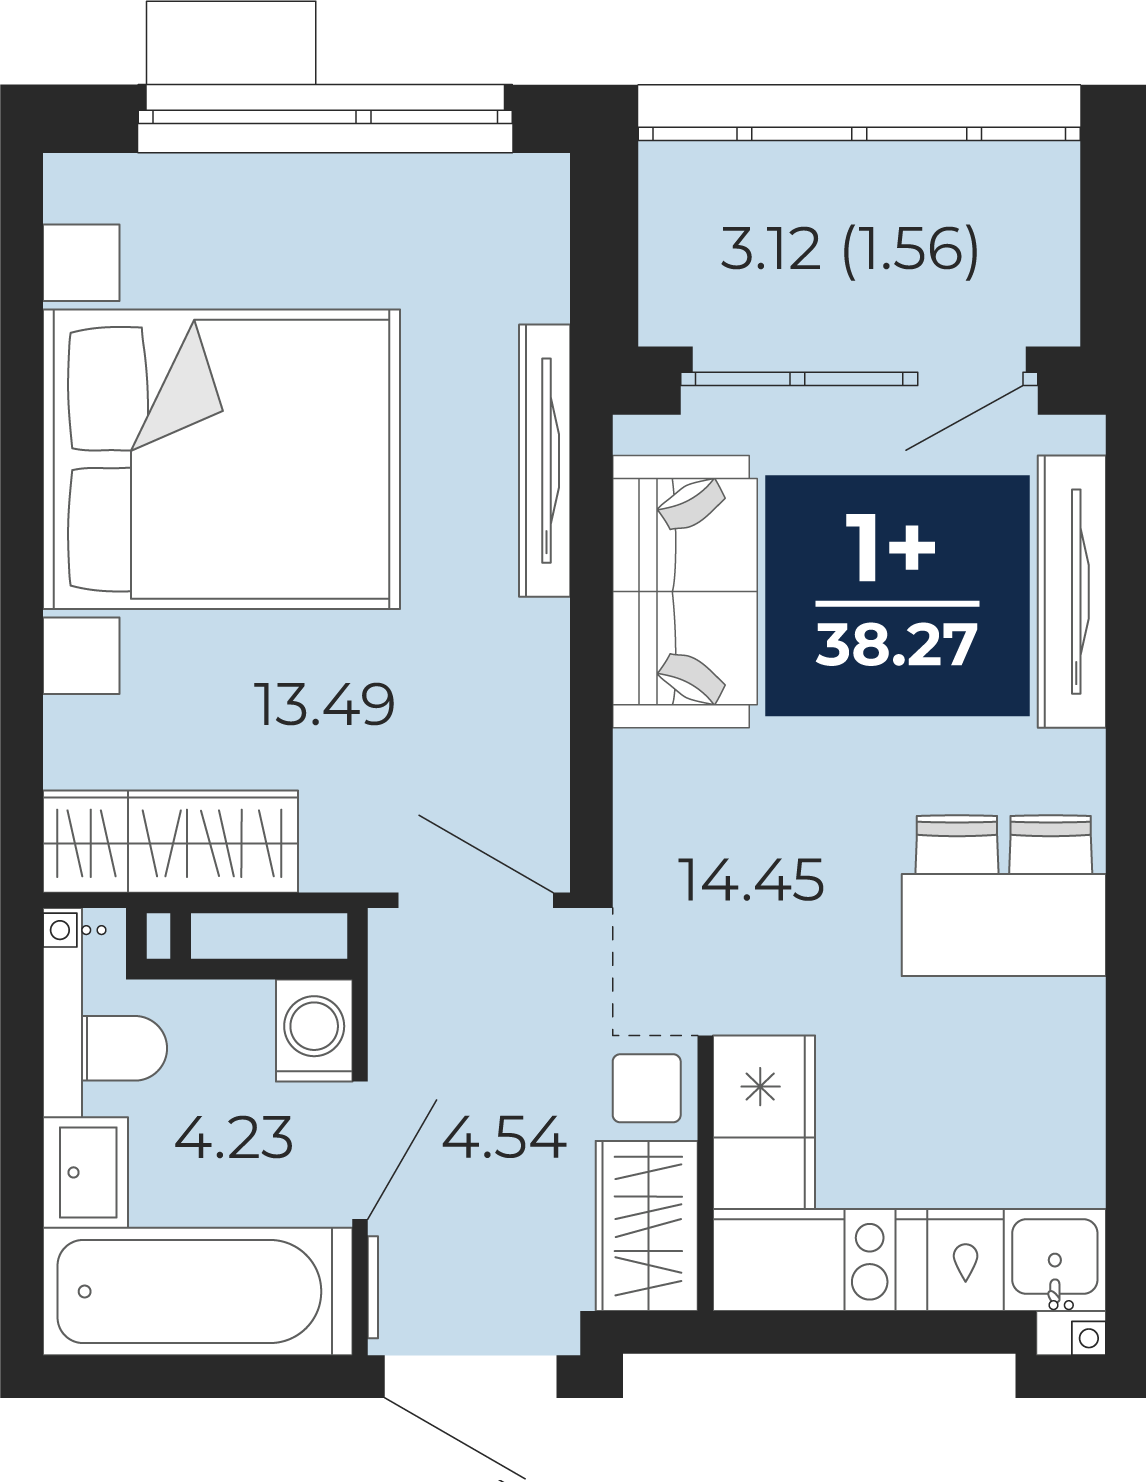 Квартира № 120, 1-комнатная, 38.27 кв. м, 2 этаж